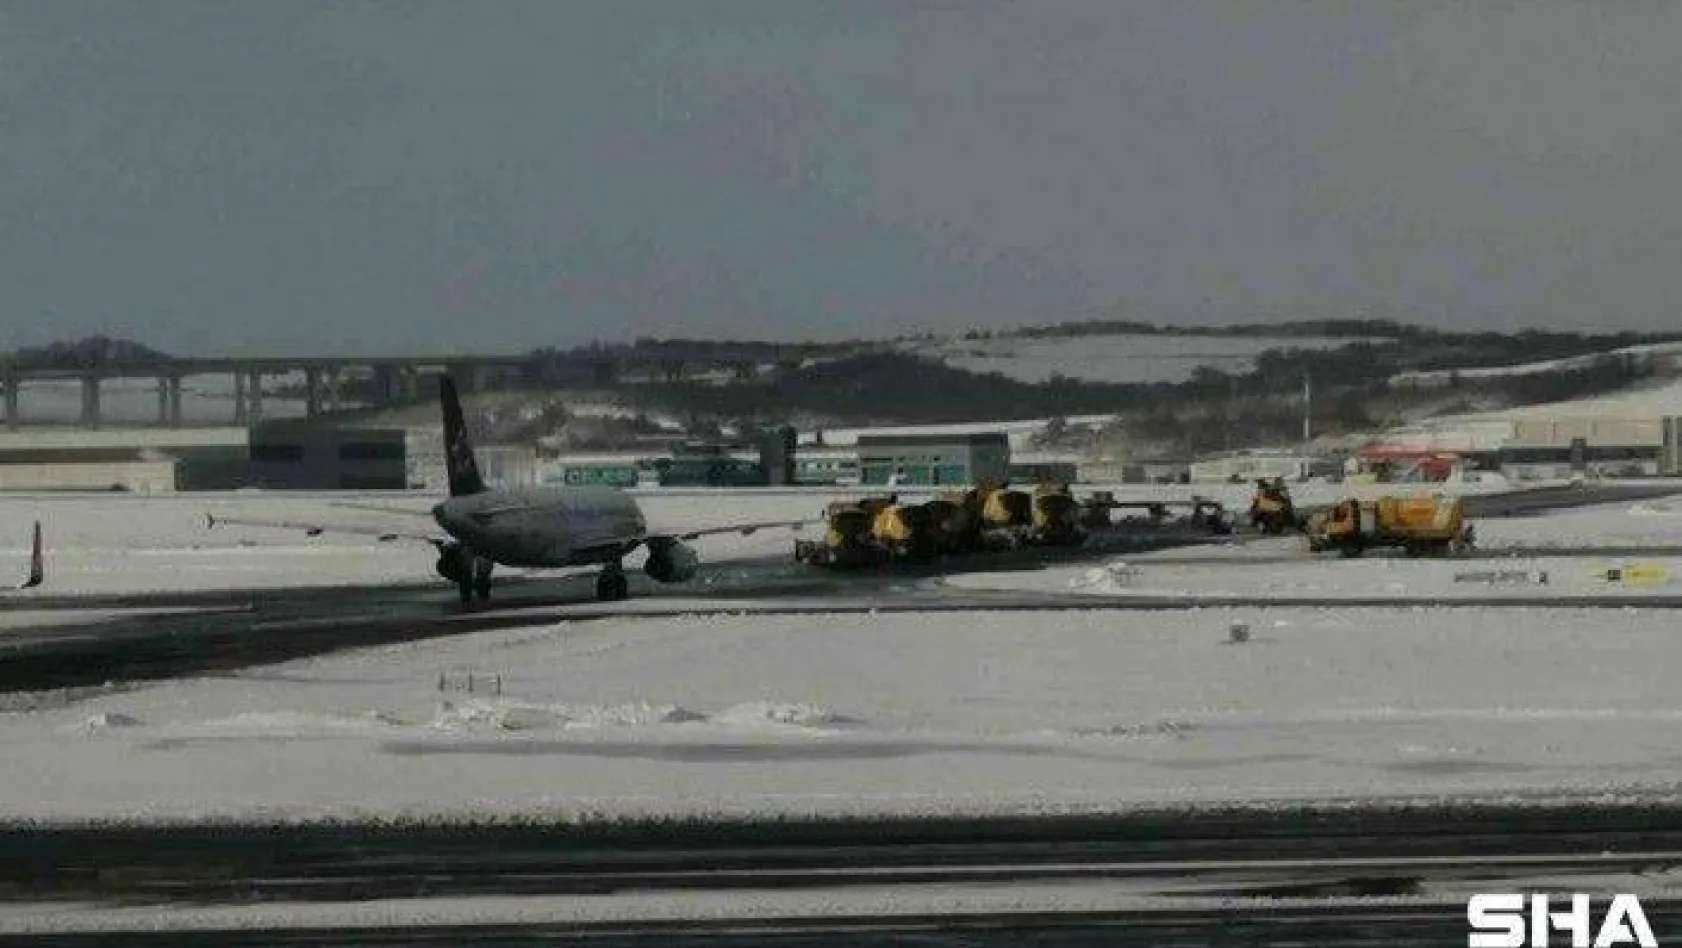 İstanbul Havalimanı'nda karla mücadele kesintisiz sürüyor